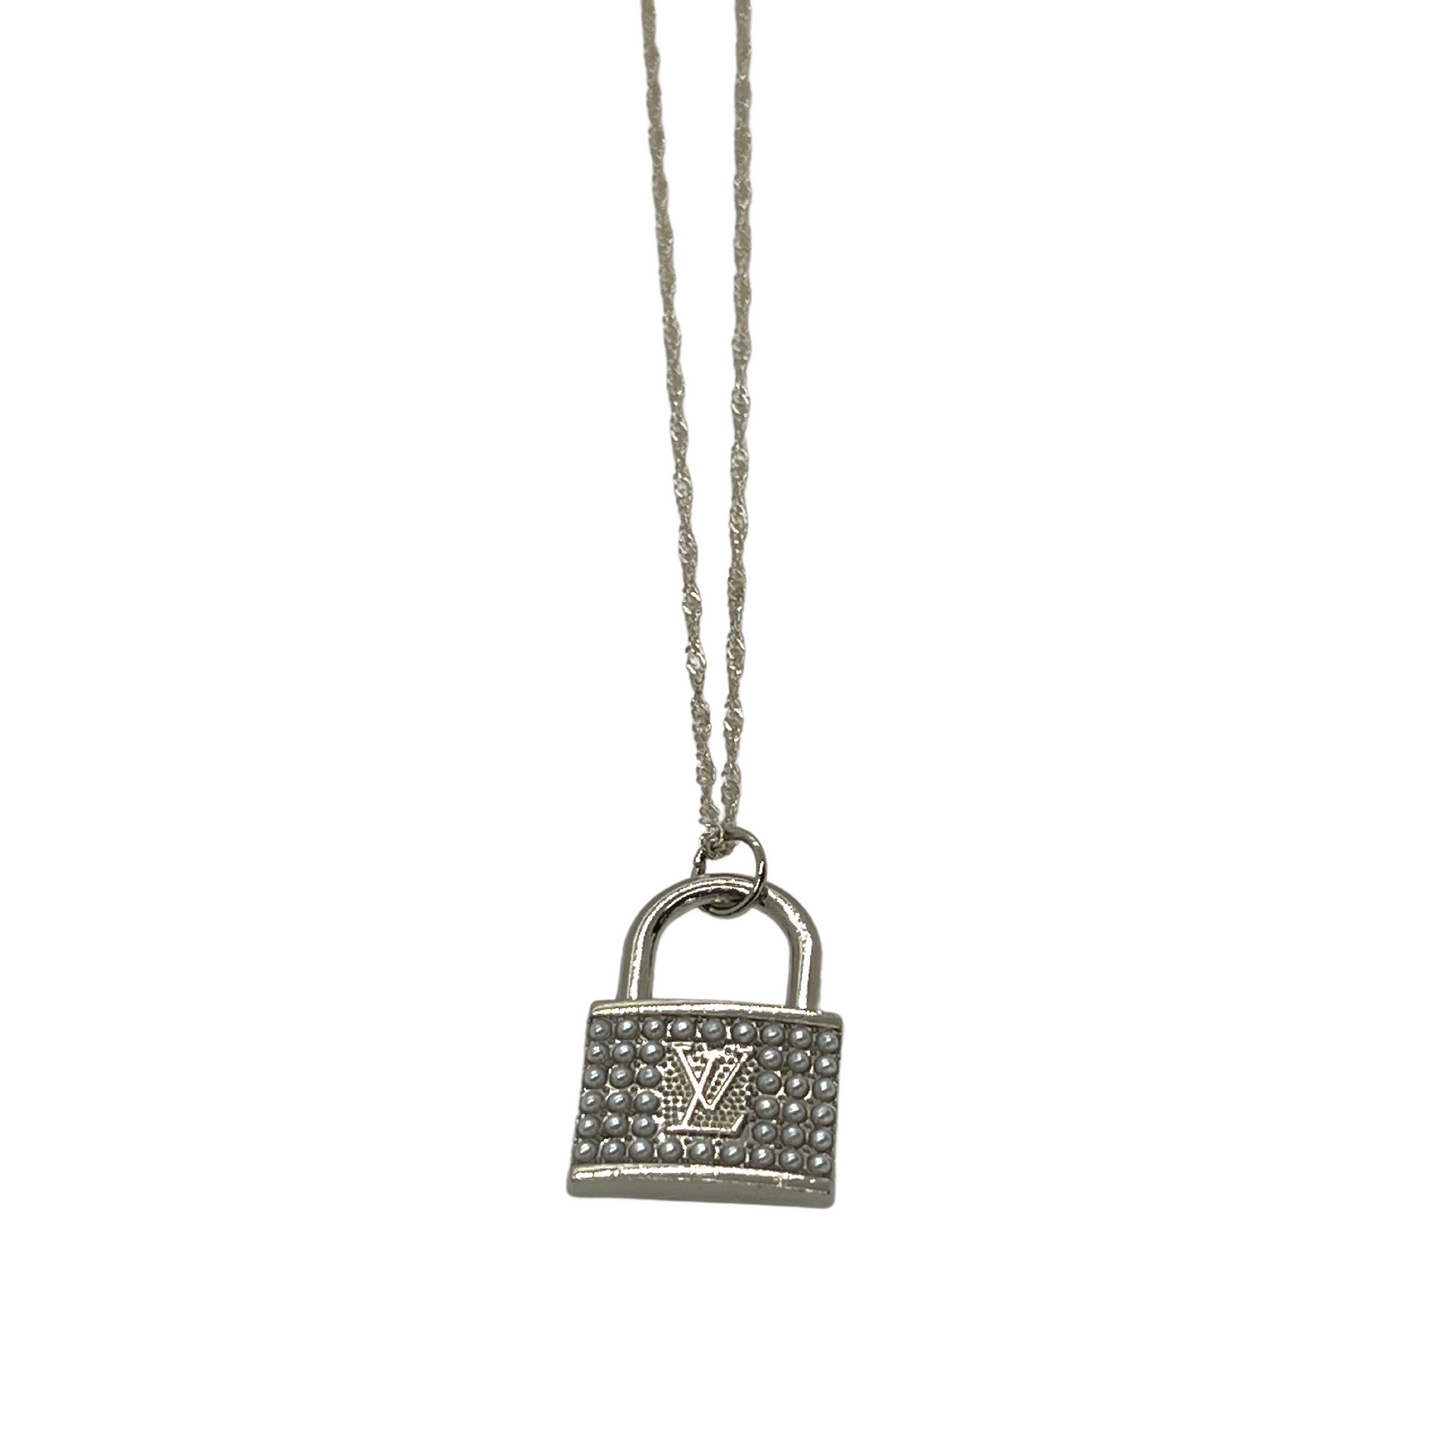 Authentic Louis Vuitton Purse Pendant | Reworked Silver 15" Necklace